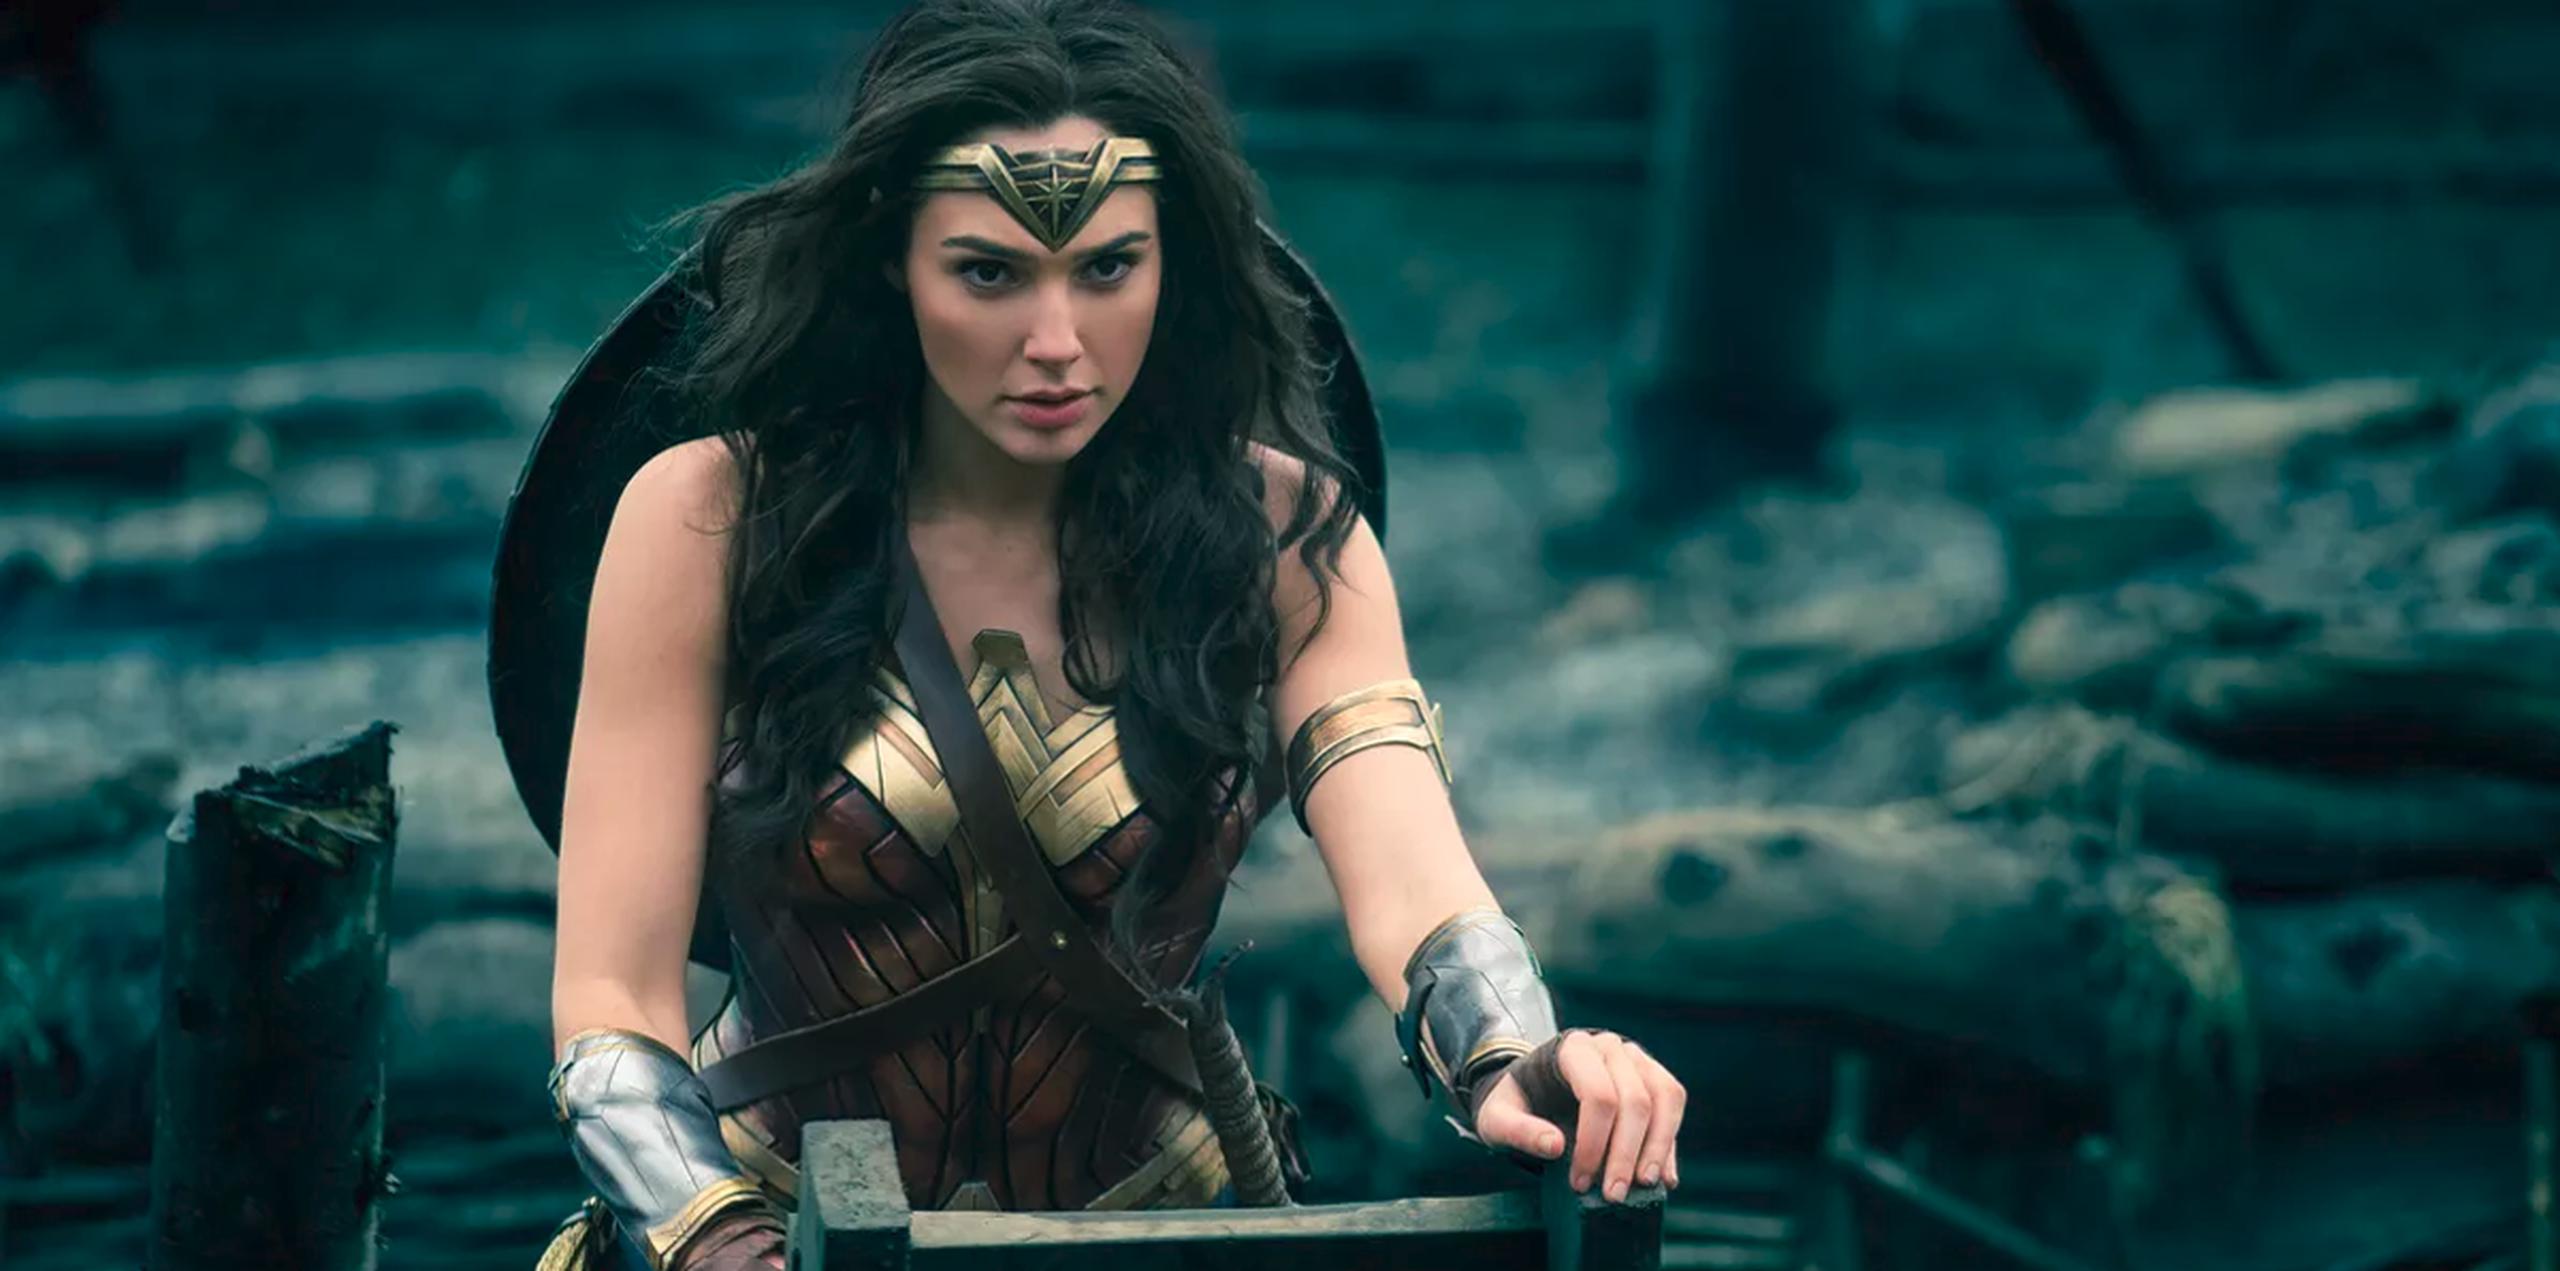 Cada año hay indicadores de cambio, como por ejemplo “Wonder Woman”, una de las películas más taquilleras del 2017 hasta ahora.